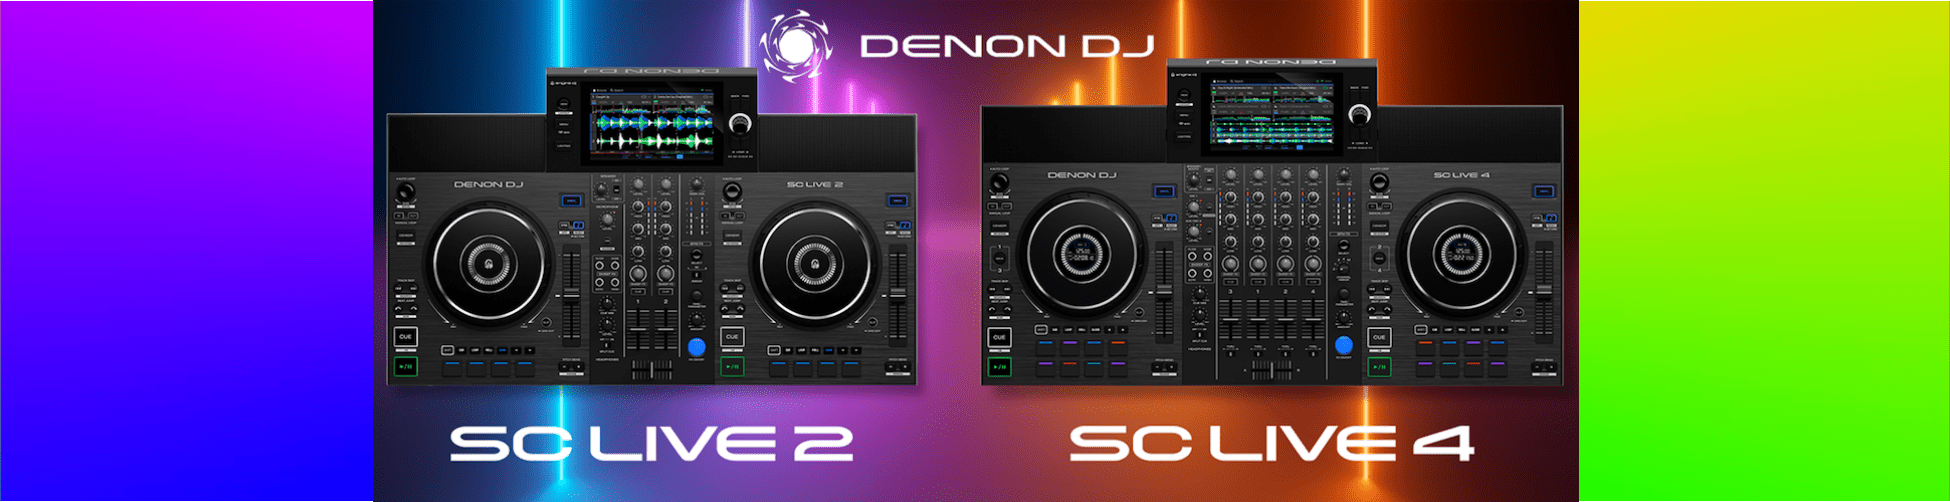 SC LIVE 2 & 4 DENON DJ